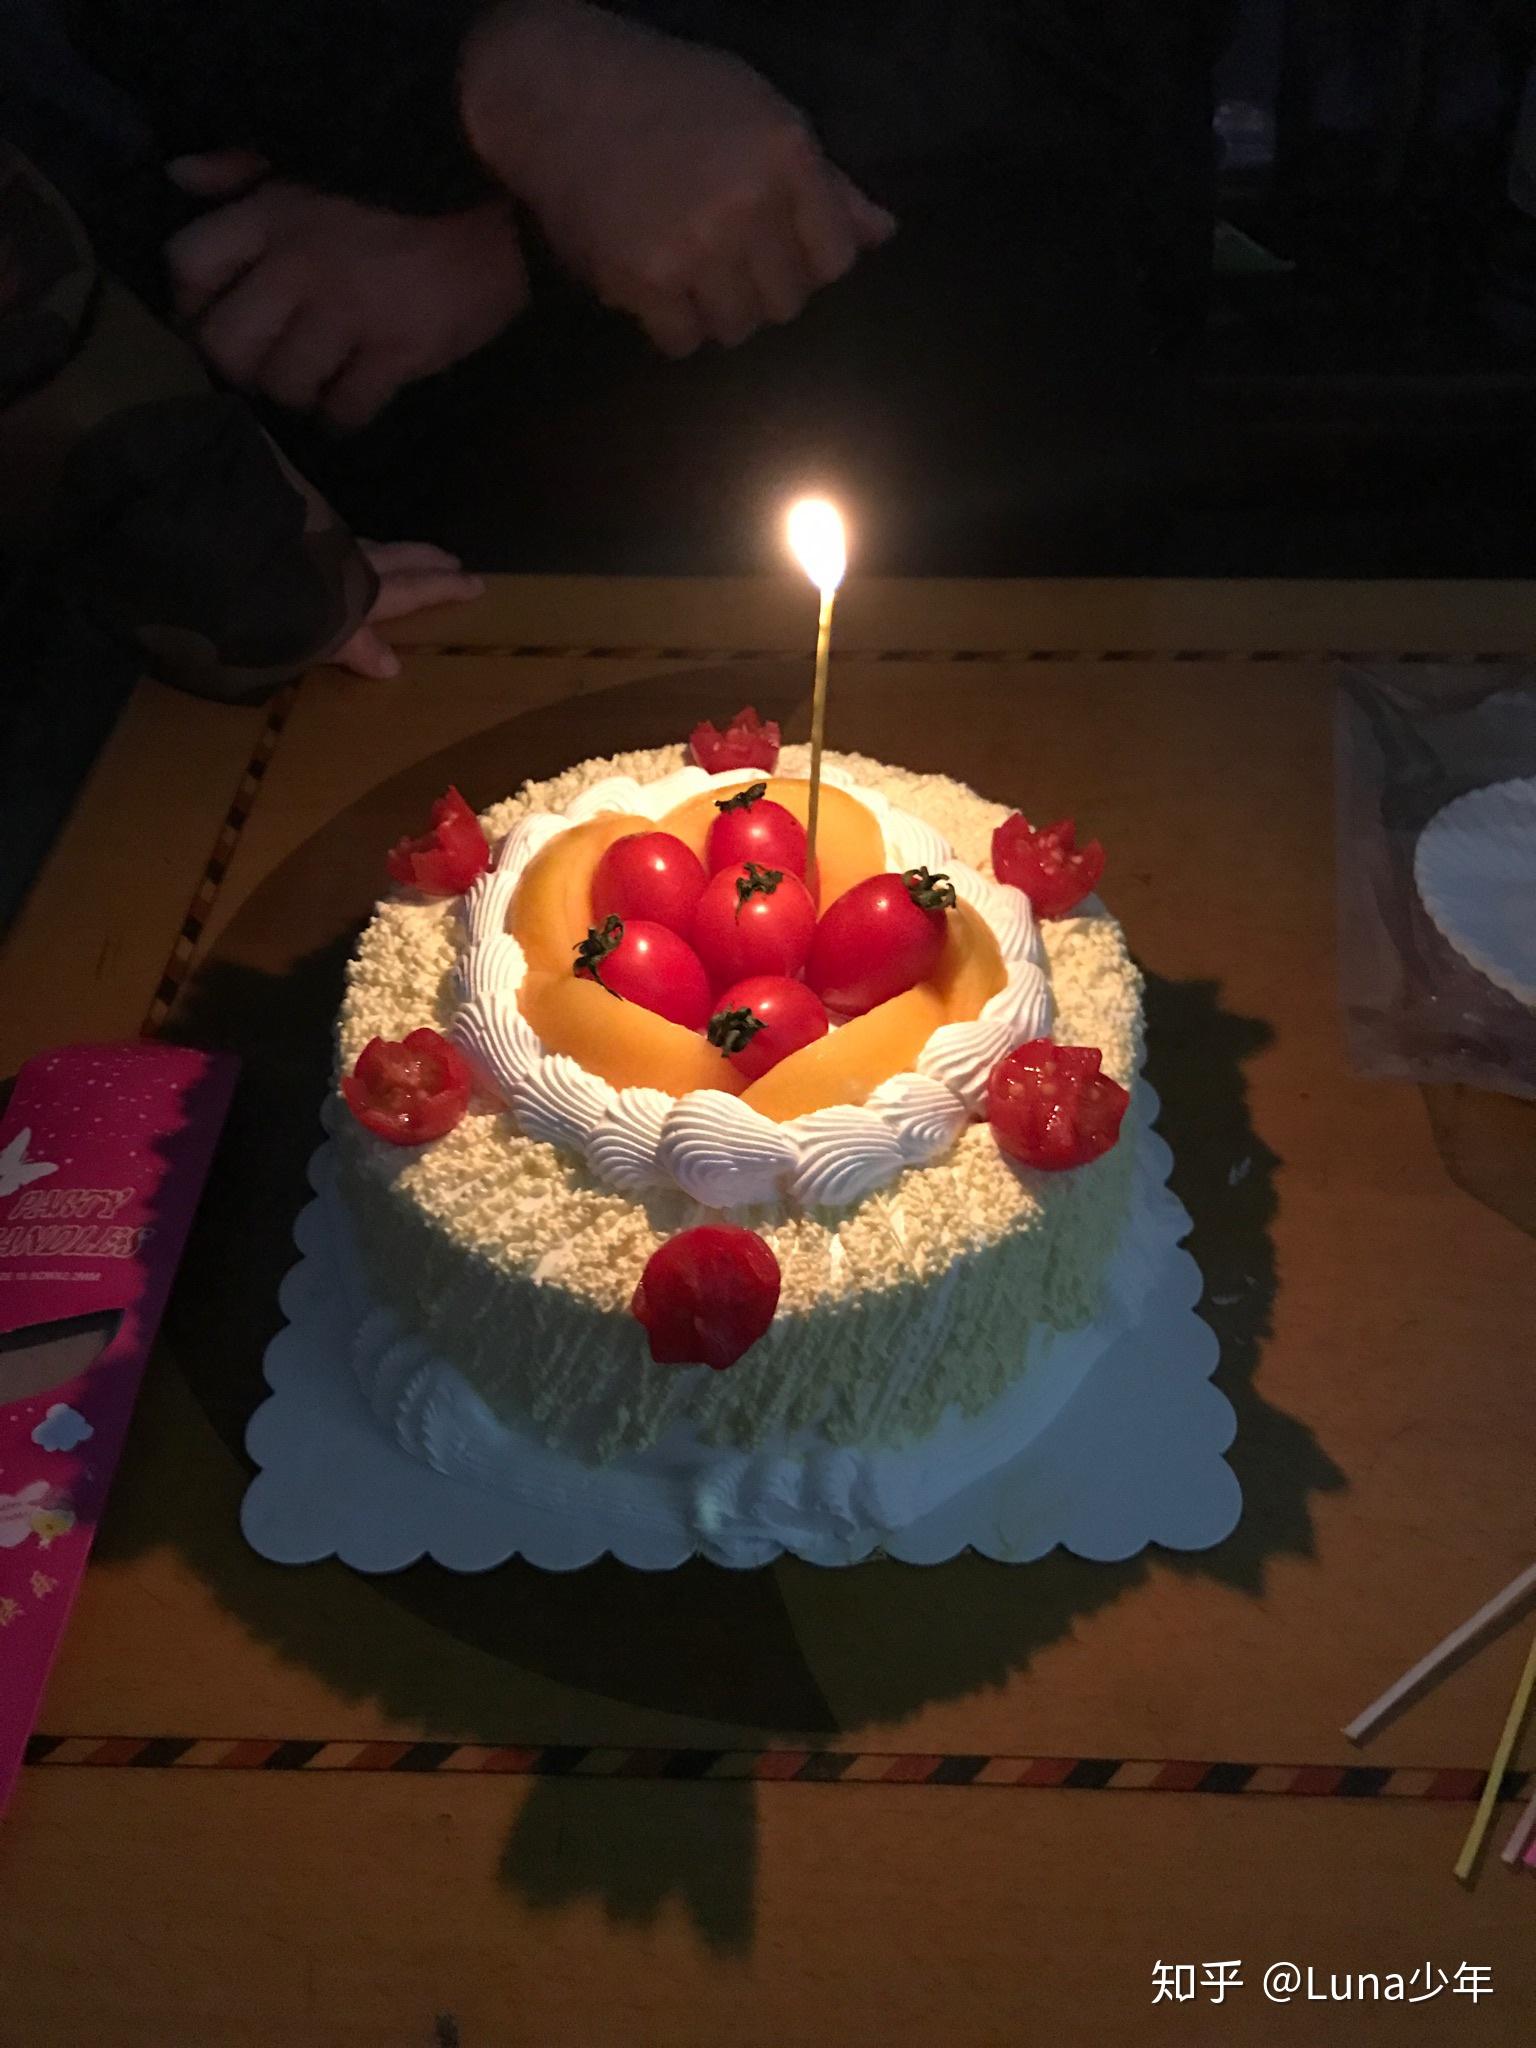 一个人过生日,需要买蛋糕吗?